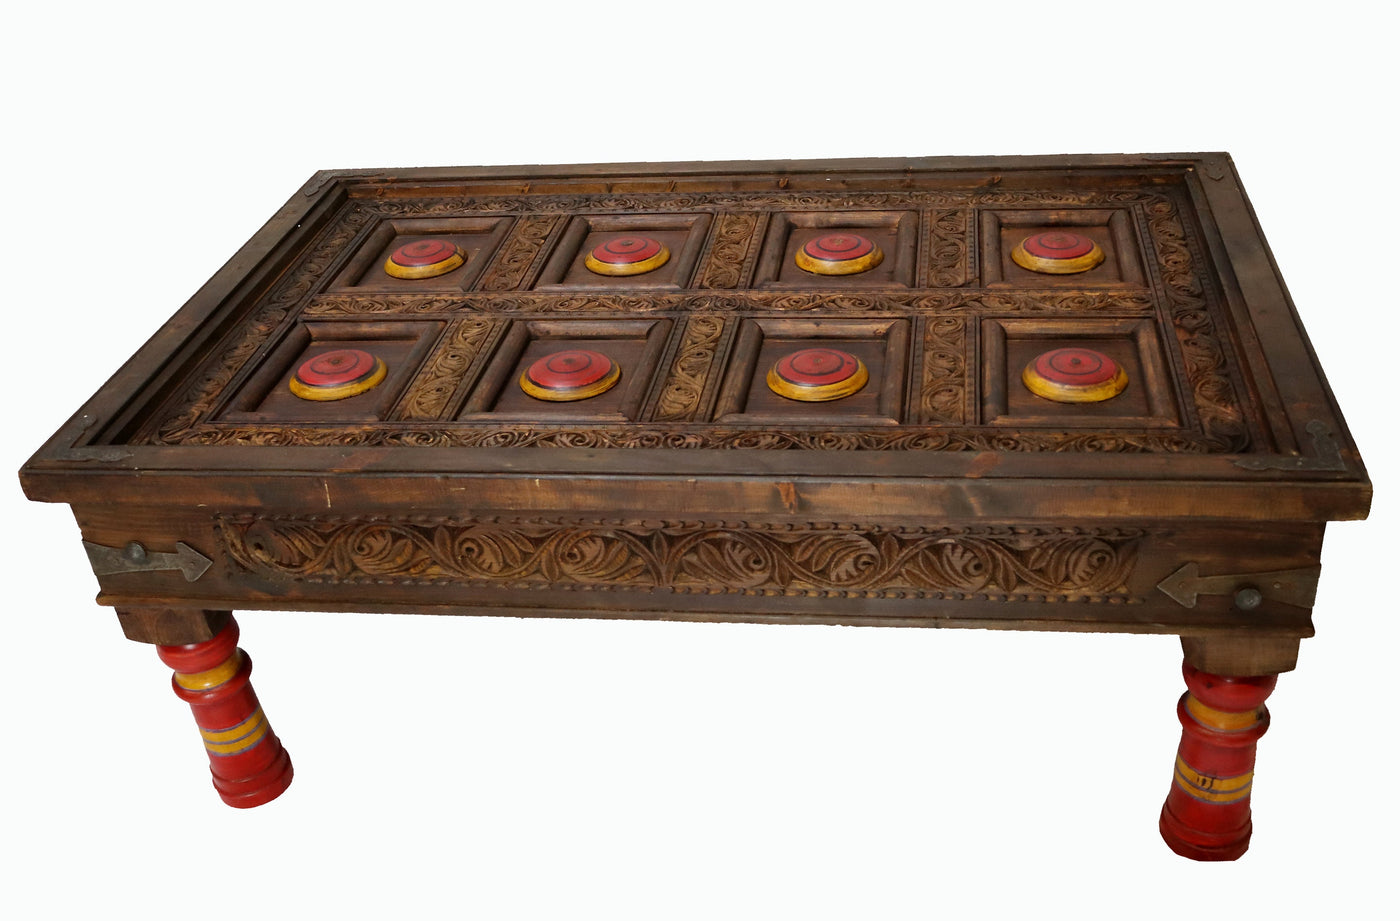 120x80 cm vintage Massivholz  verzierte orient Teetisch beisteltisch Tisch couchtisch Wohnzimmertisch aus  Afghanistan Punjab Pakistan Nr-PJ Tische Orientsbazar   